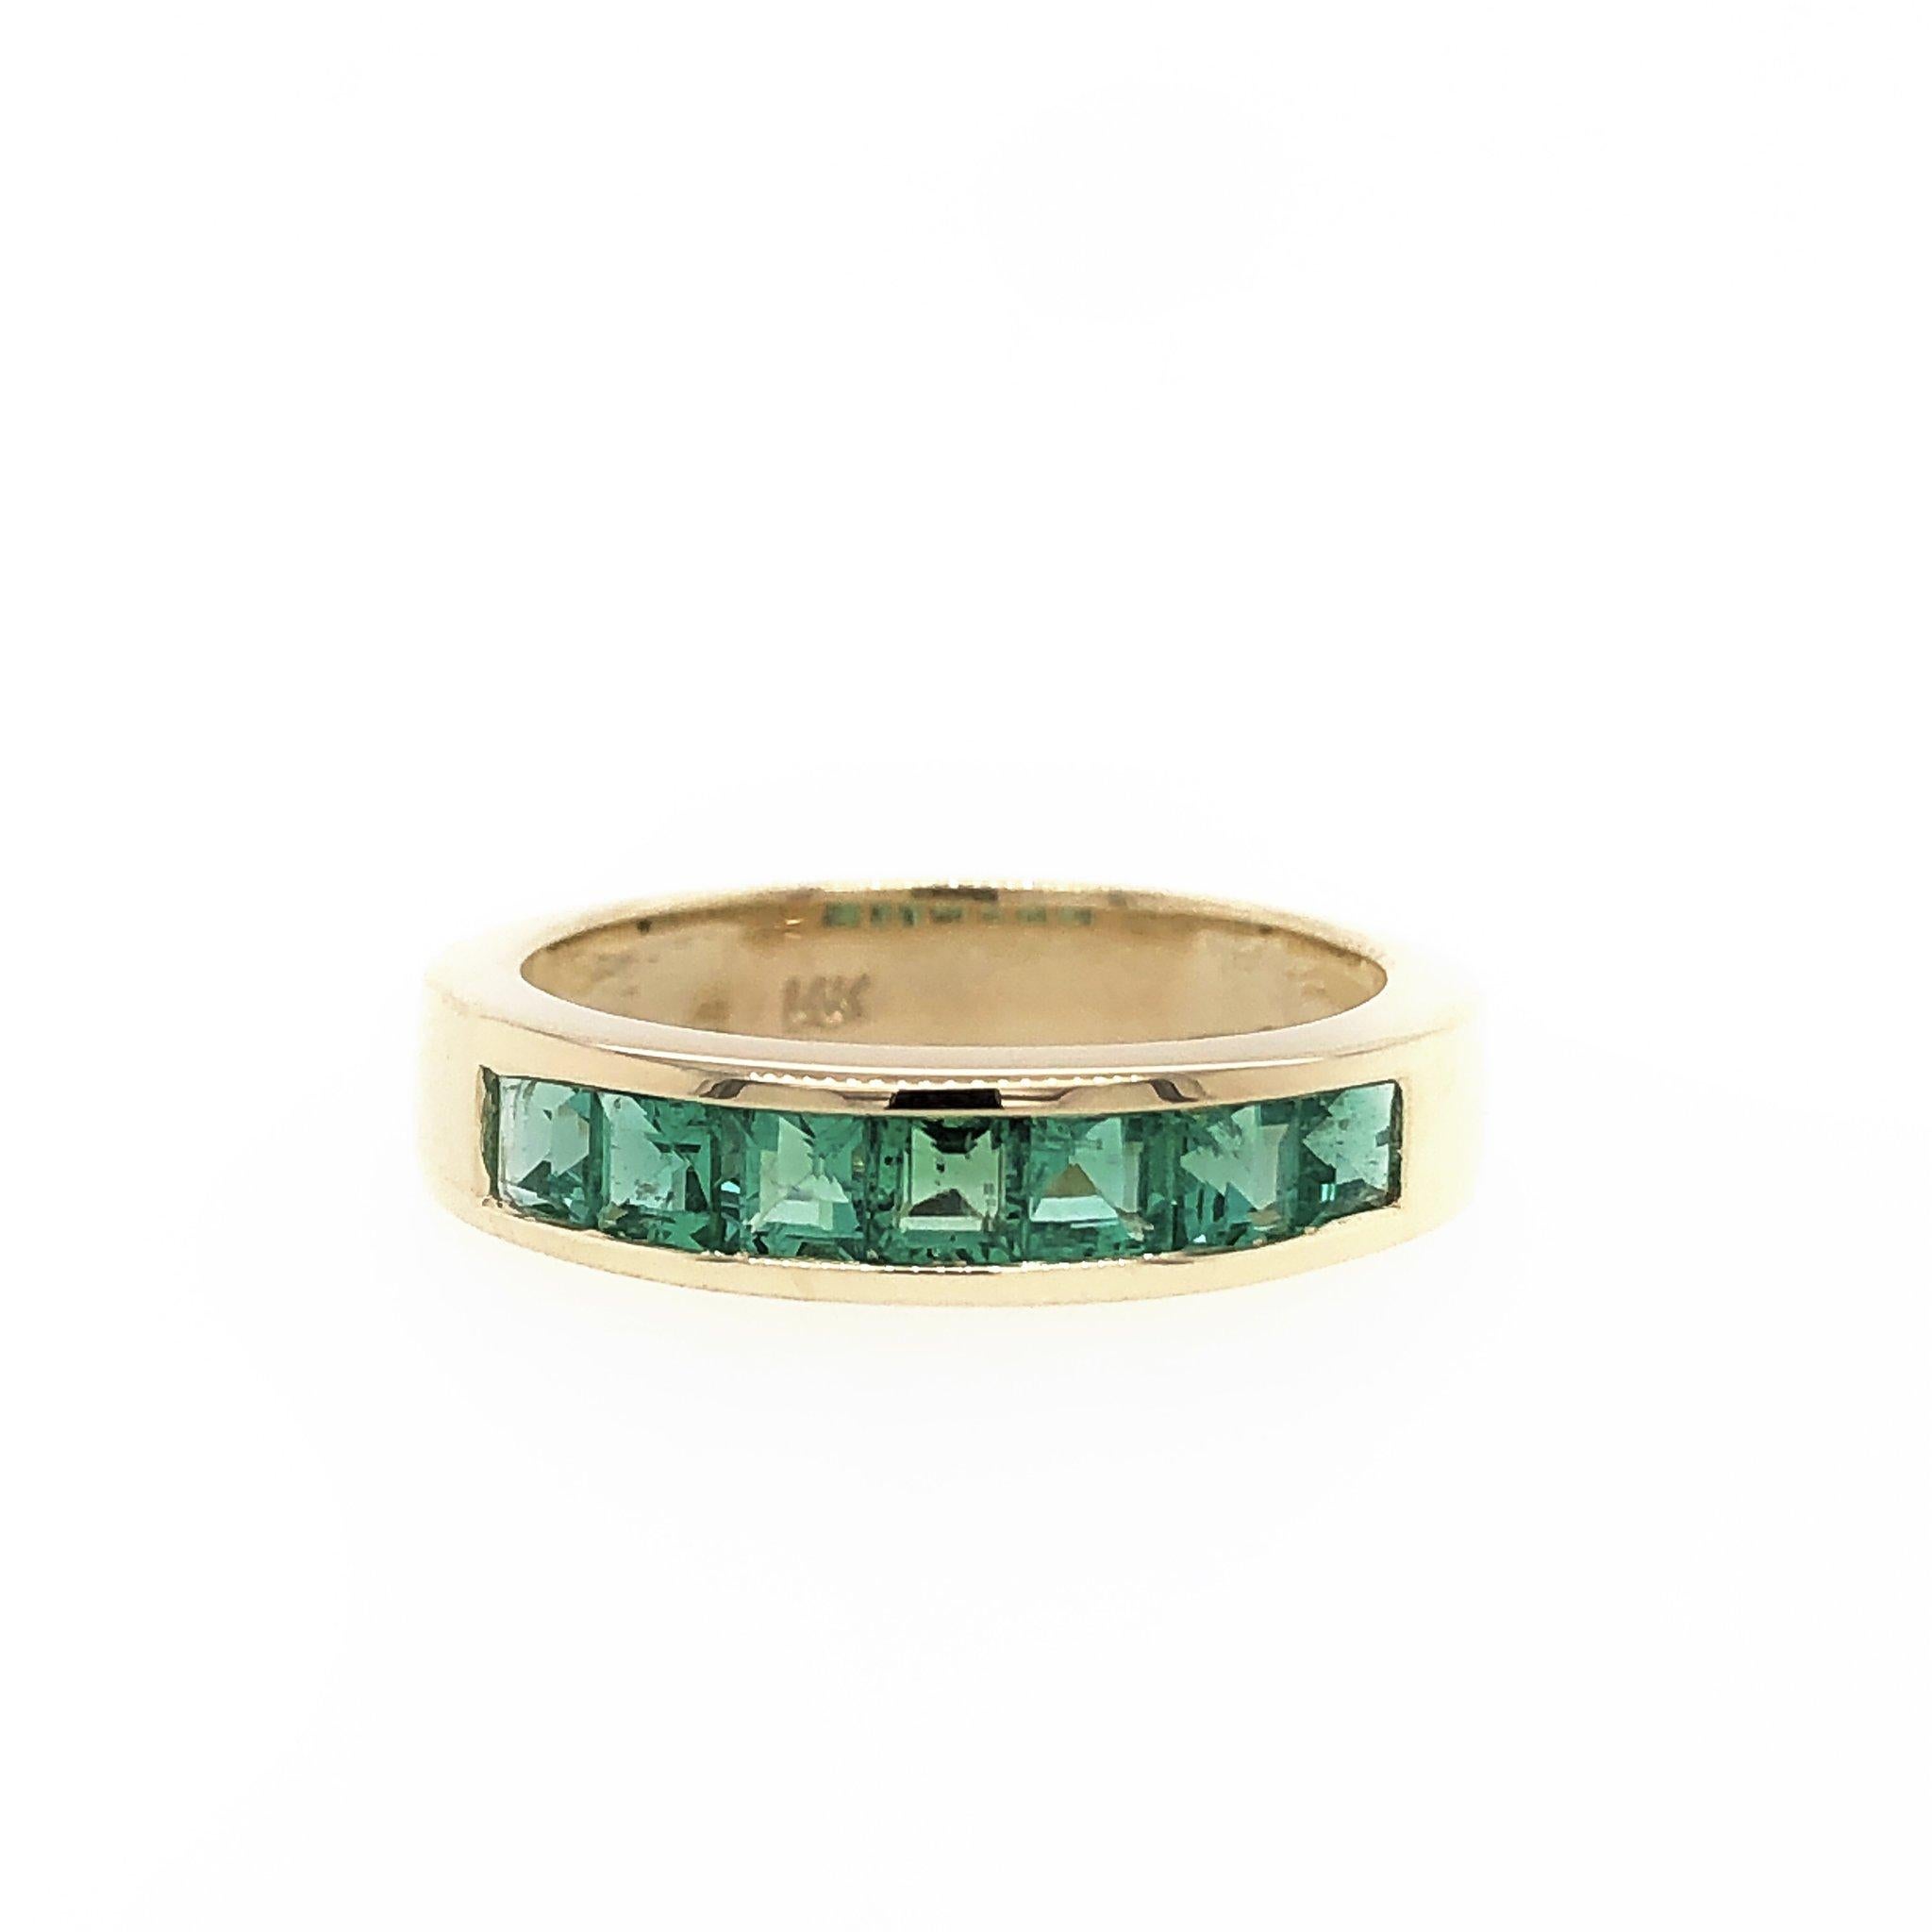 Dieser schlichte und schlichte Ring ist mit 7 grünen Smaragden besetzt, die sorgfältig von Hand aufeinander abgestimmt wurden. Gesamtkaratgewicht: ca. 0,81. Die Breite des Rings beträgt 4,23 mm. Gefertigt aus 14k Gelbgold. Ring Größe 6. Gewicht: